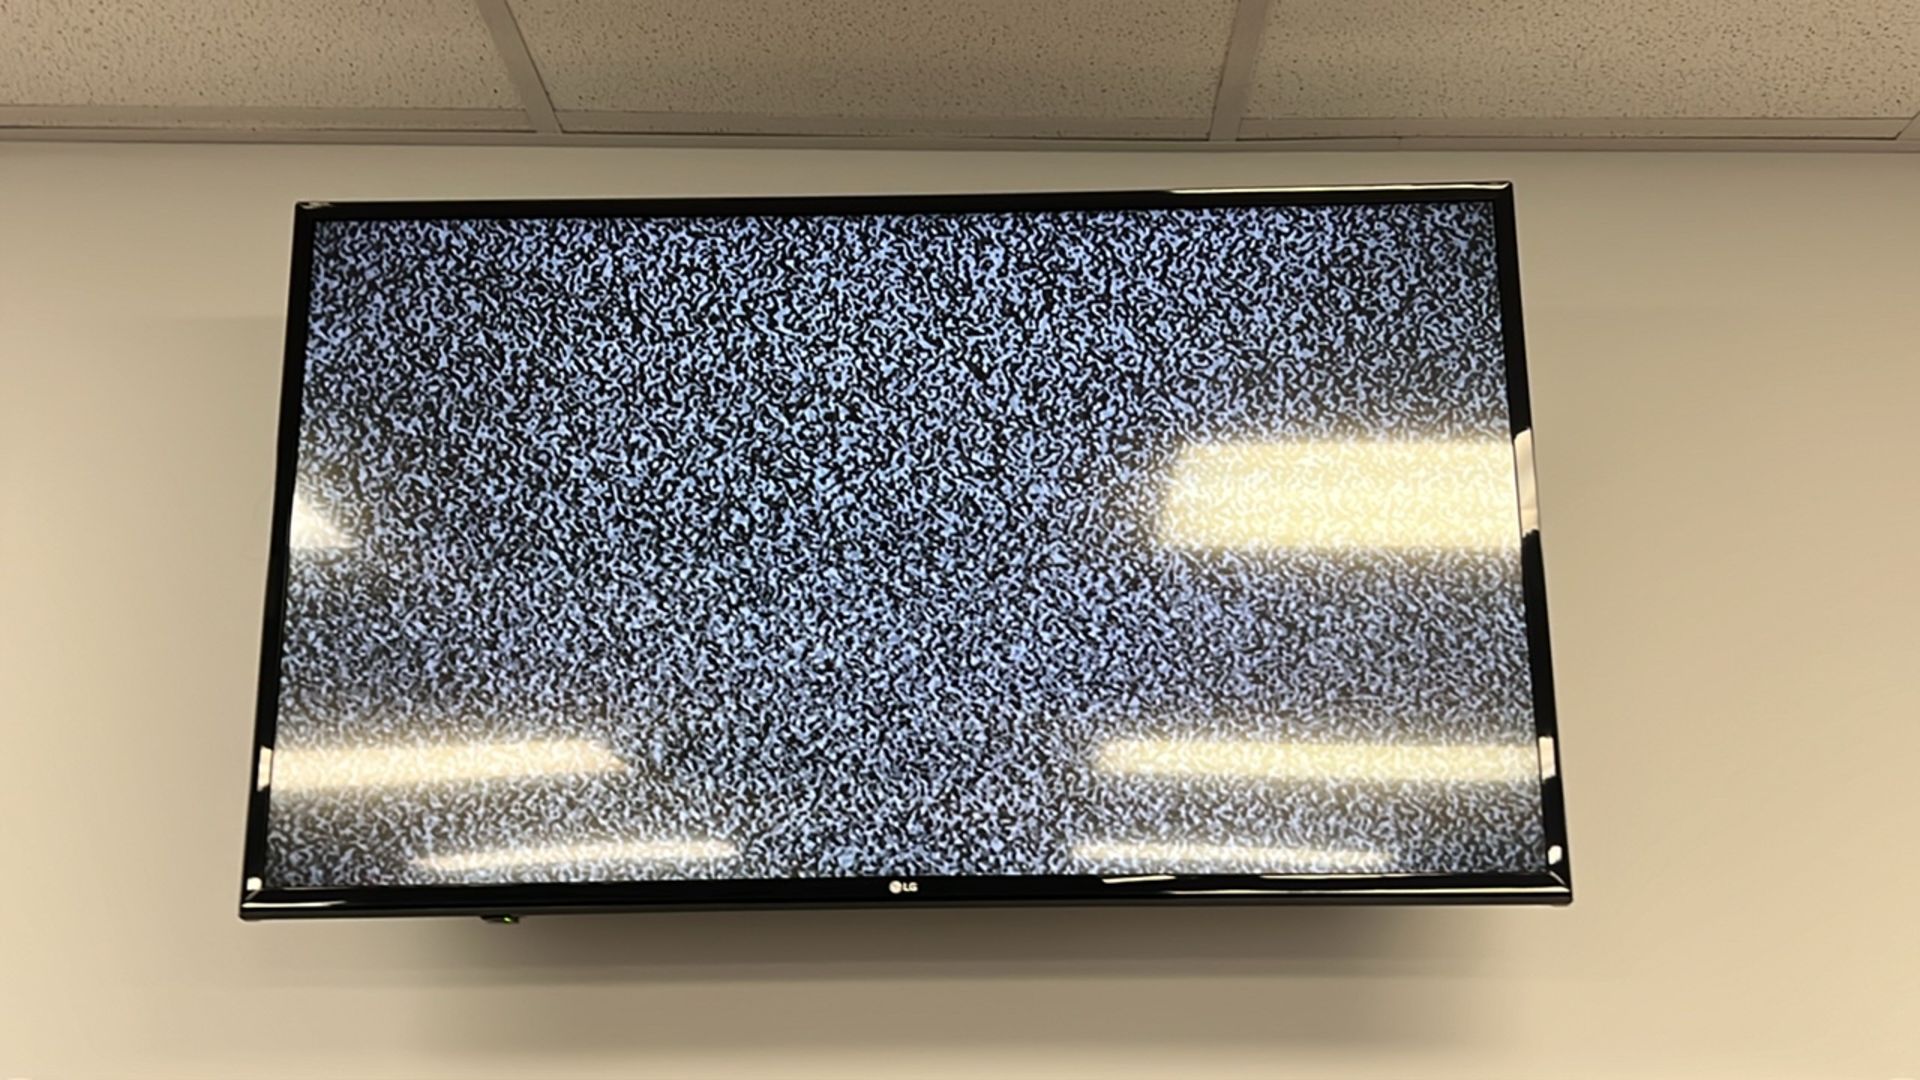 LG FLATSCREEN TELEVISIONS, QTY. (2) - Image 2 of 2